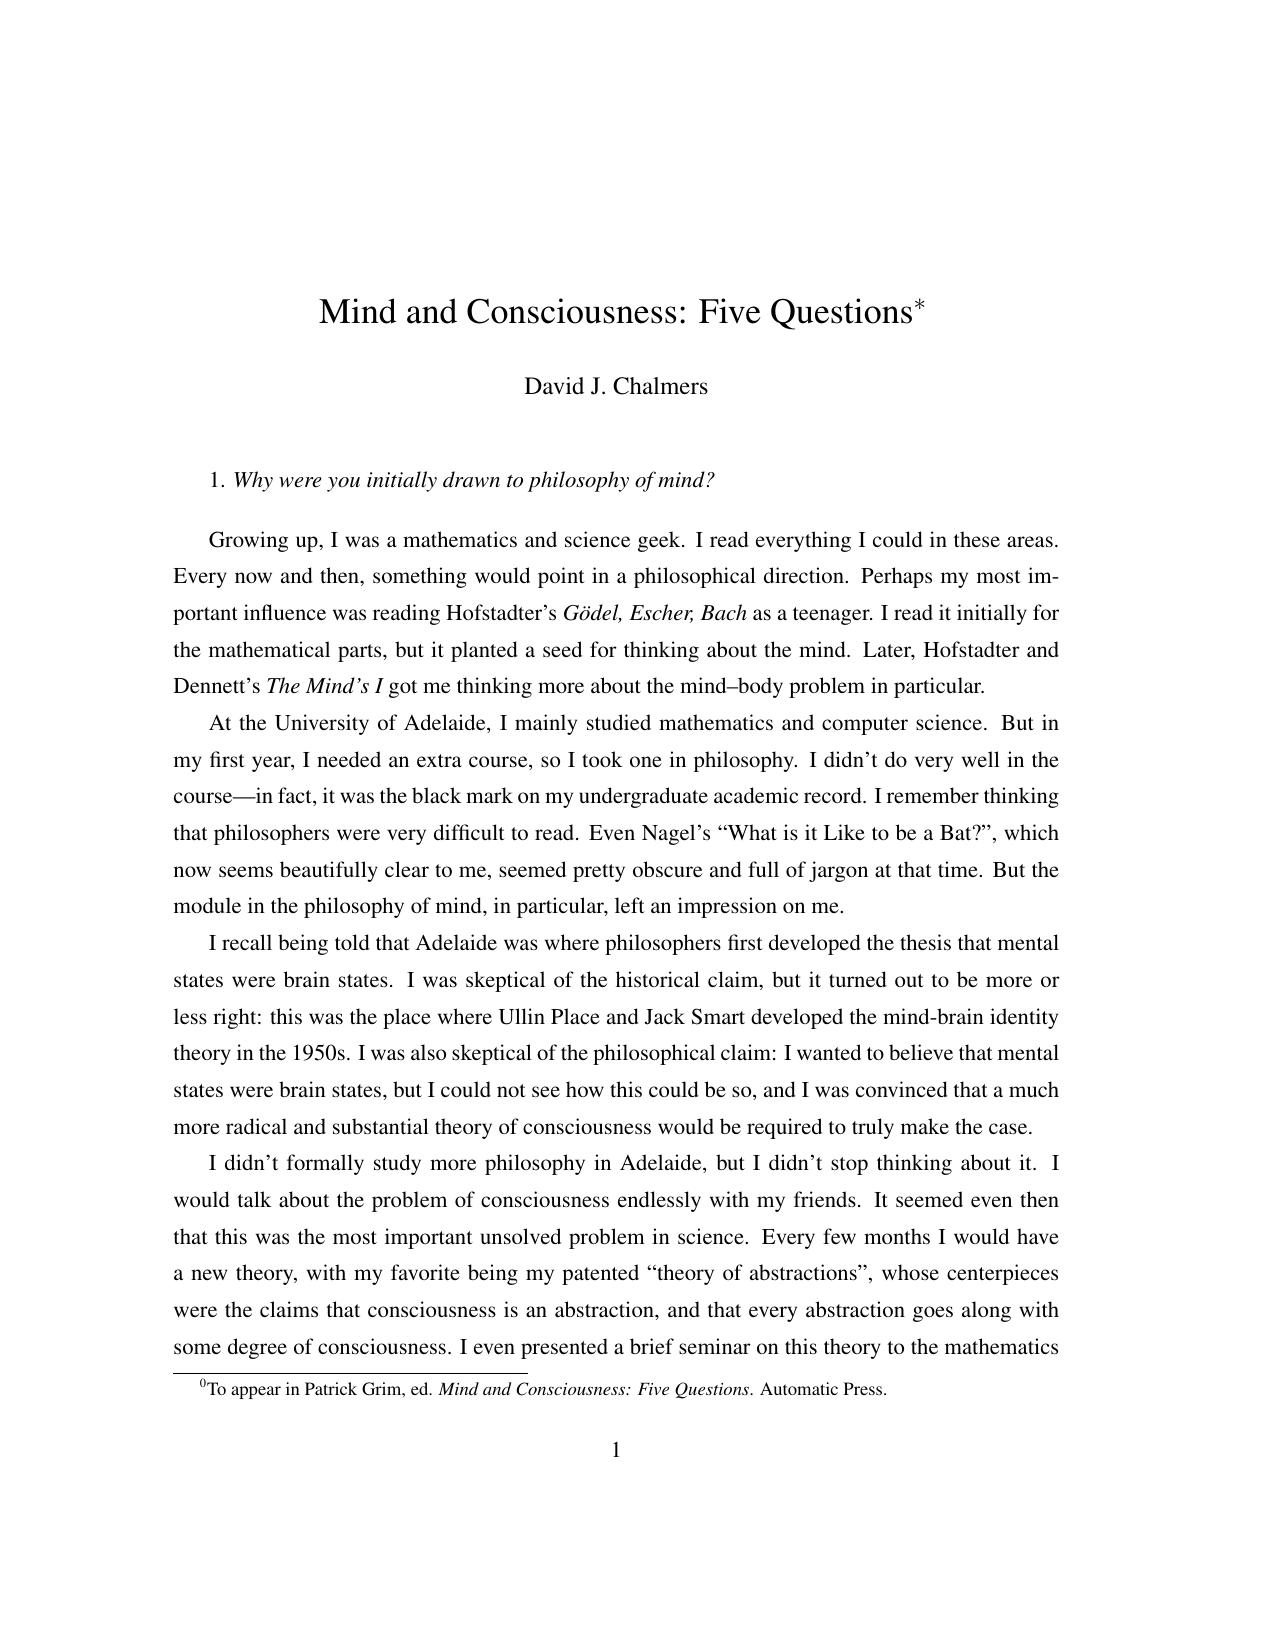 Mind & Consciousness: Five Questions (Essay)